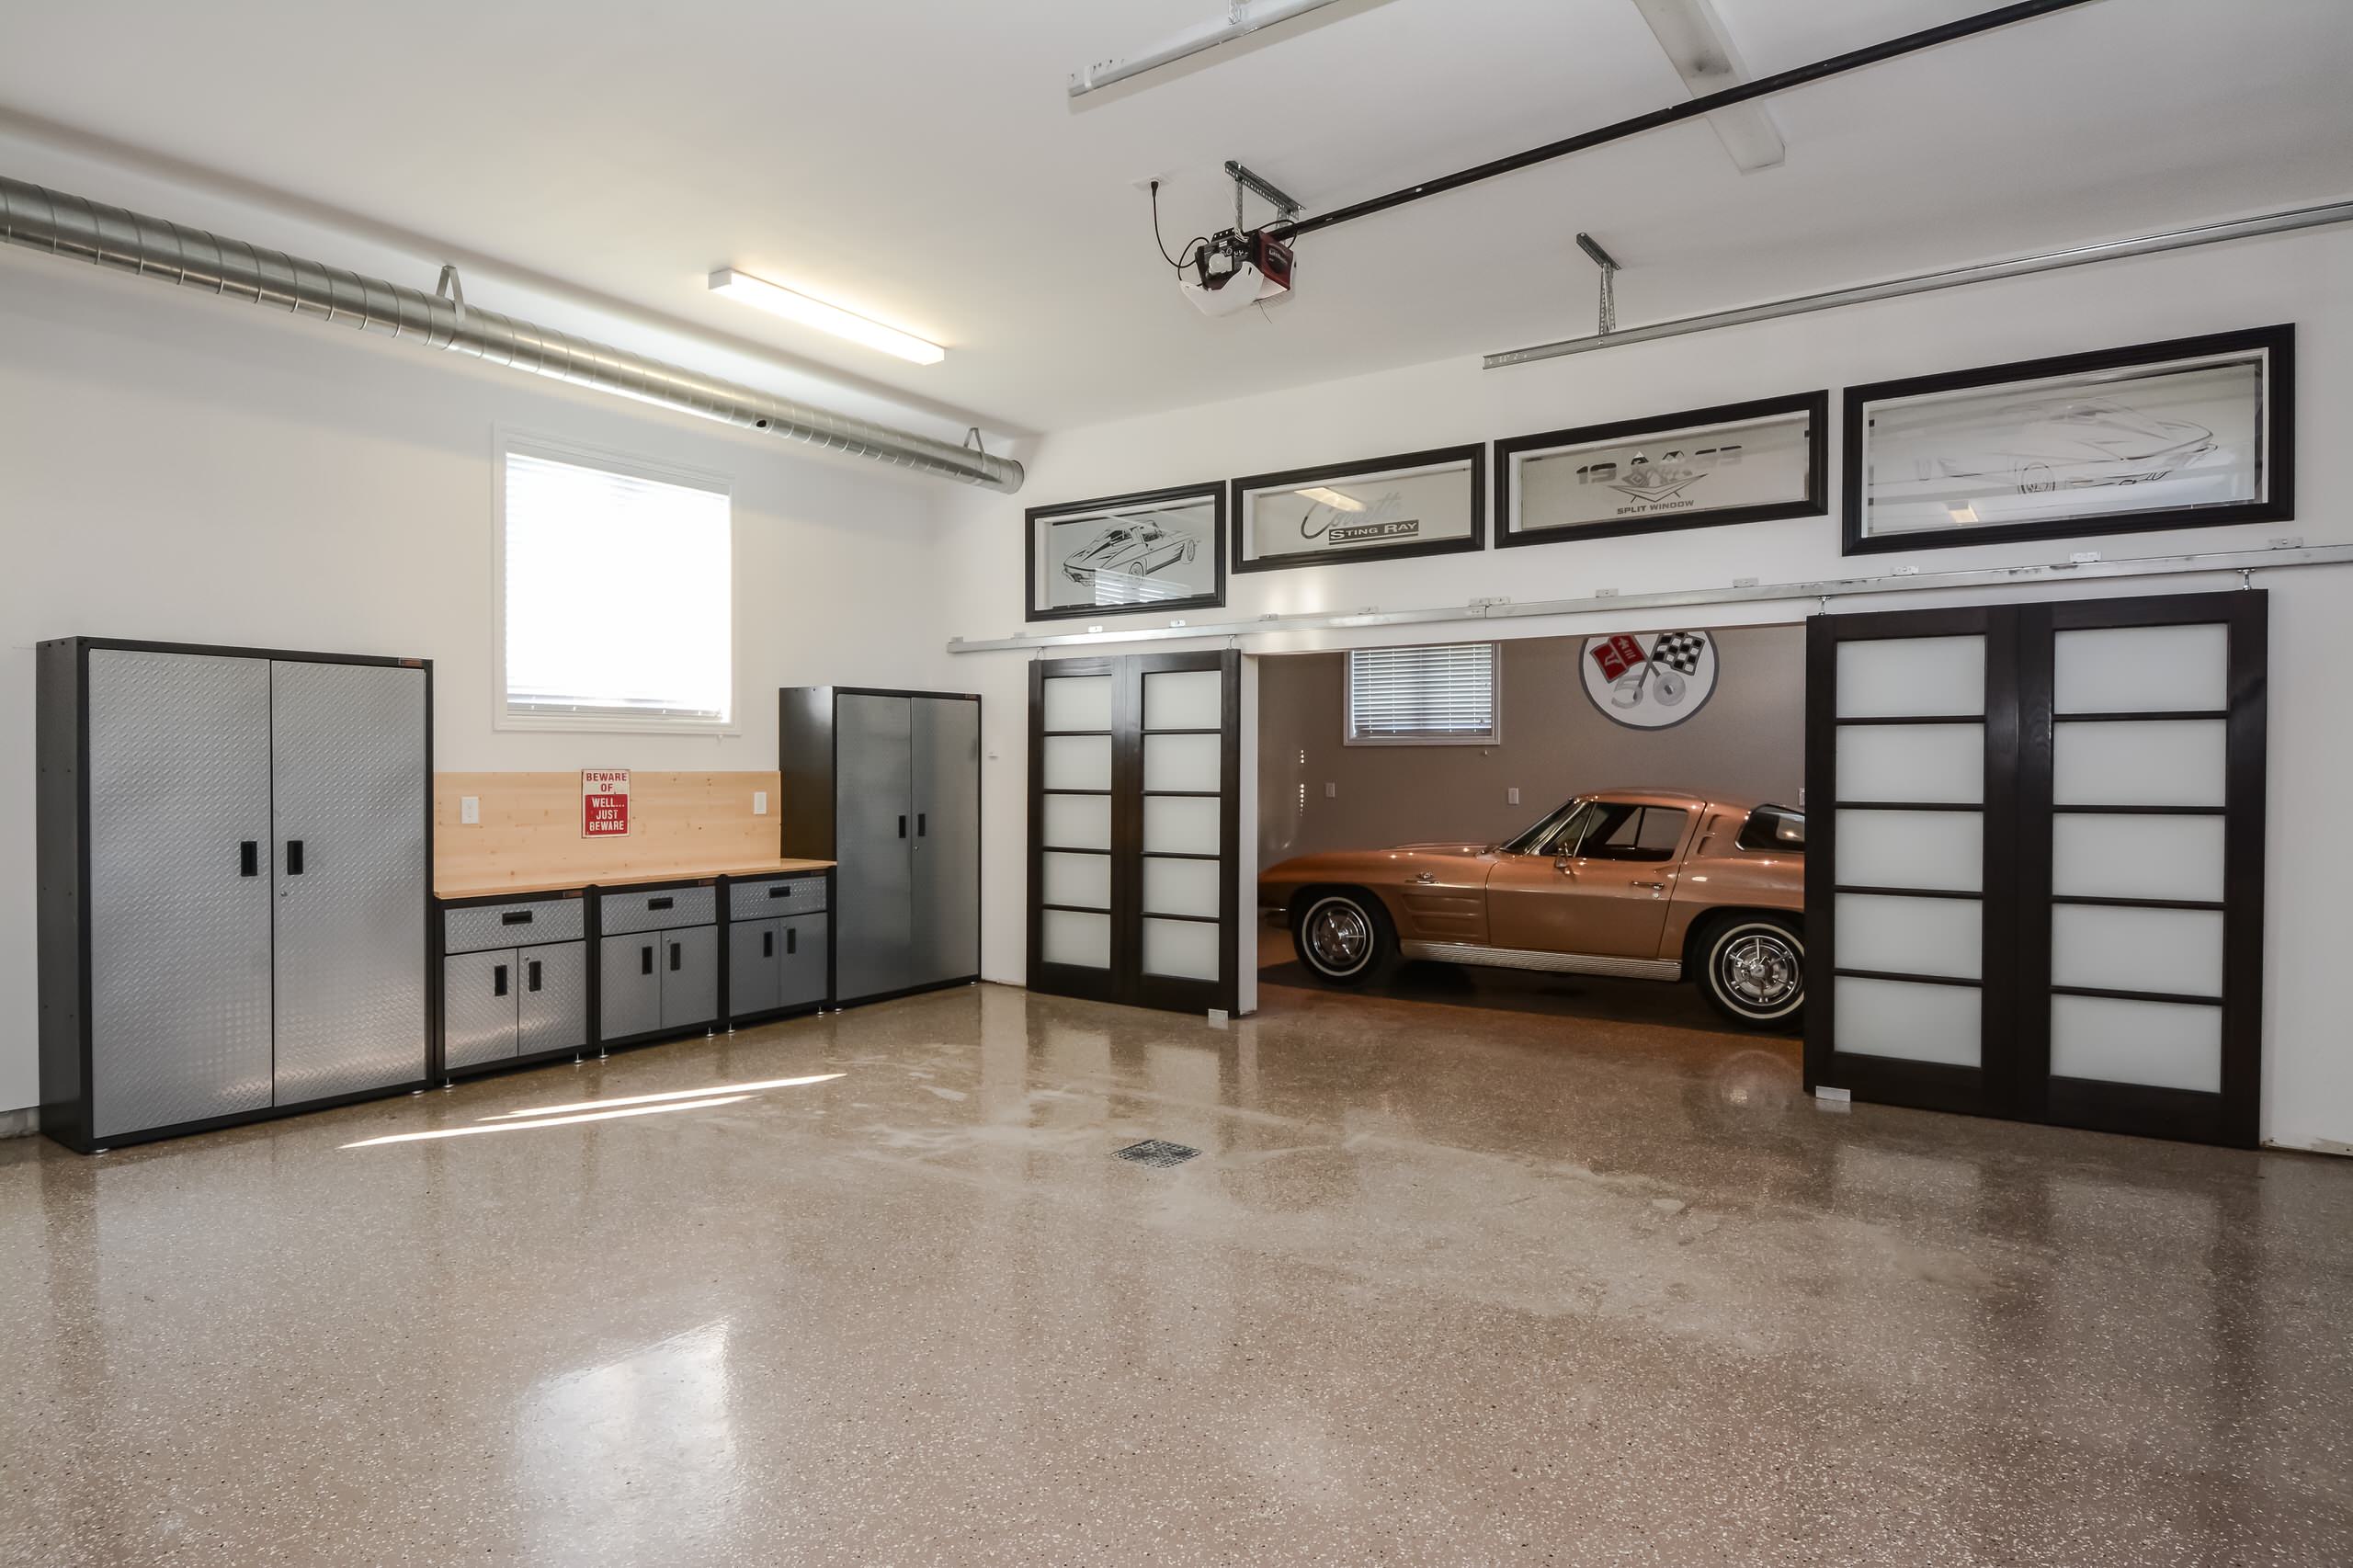 Красивые гаражи внутри. Красивый интерьер гаража. Гараж внутри. Красивый гараж. Красивая отделка гаража.